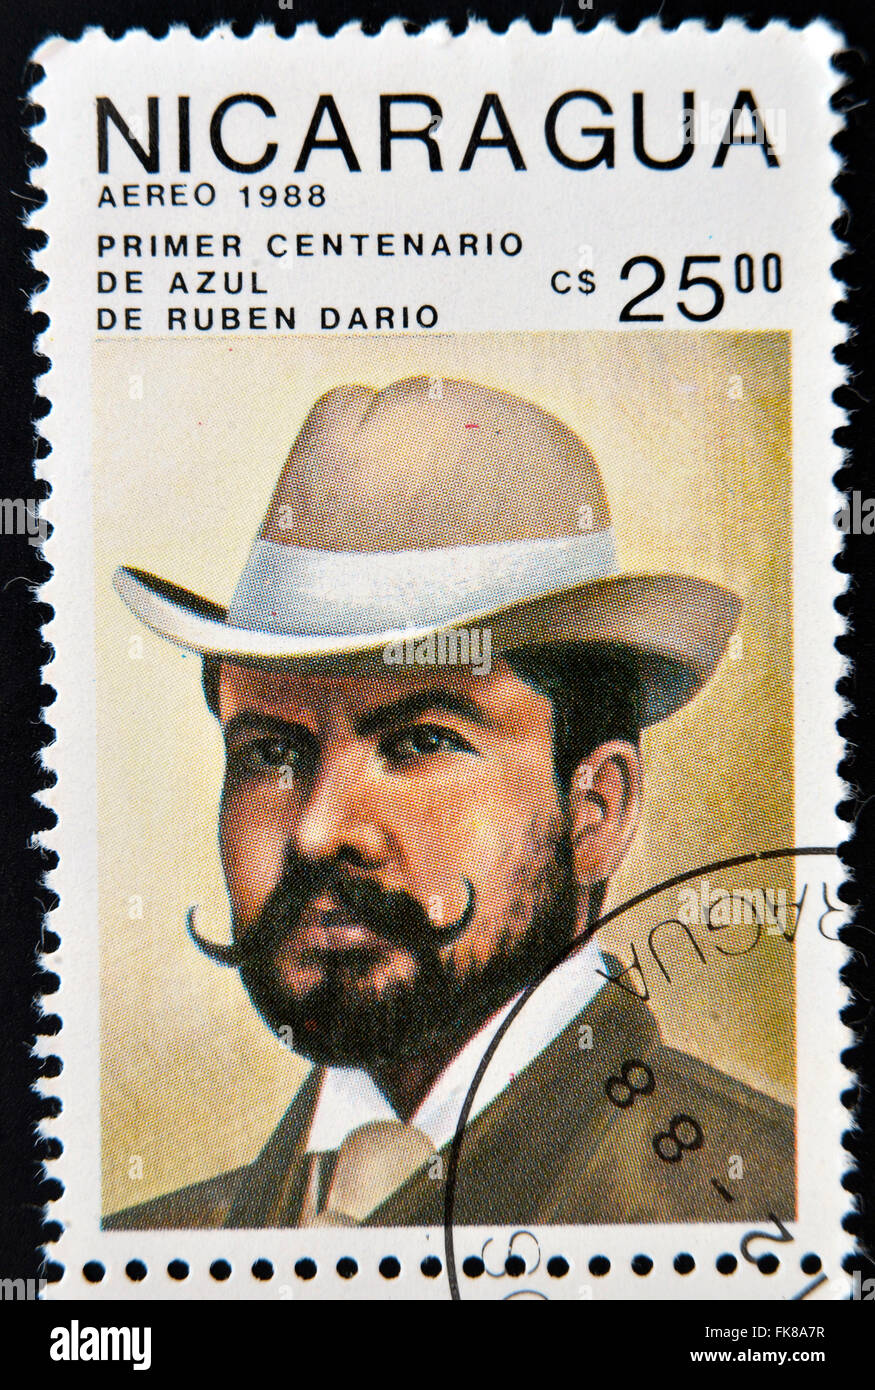 NICARAGUA - circa 1988 : timbre imprimé en Nicaragua présente le poète nicaraguayen Ruben Dario, vers 1988 Banque D'Images